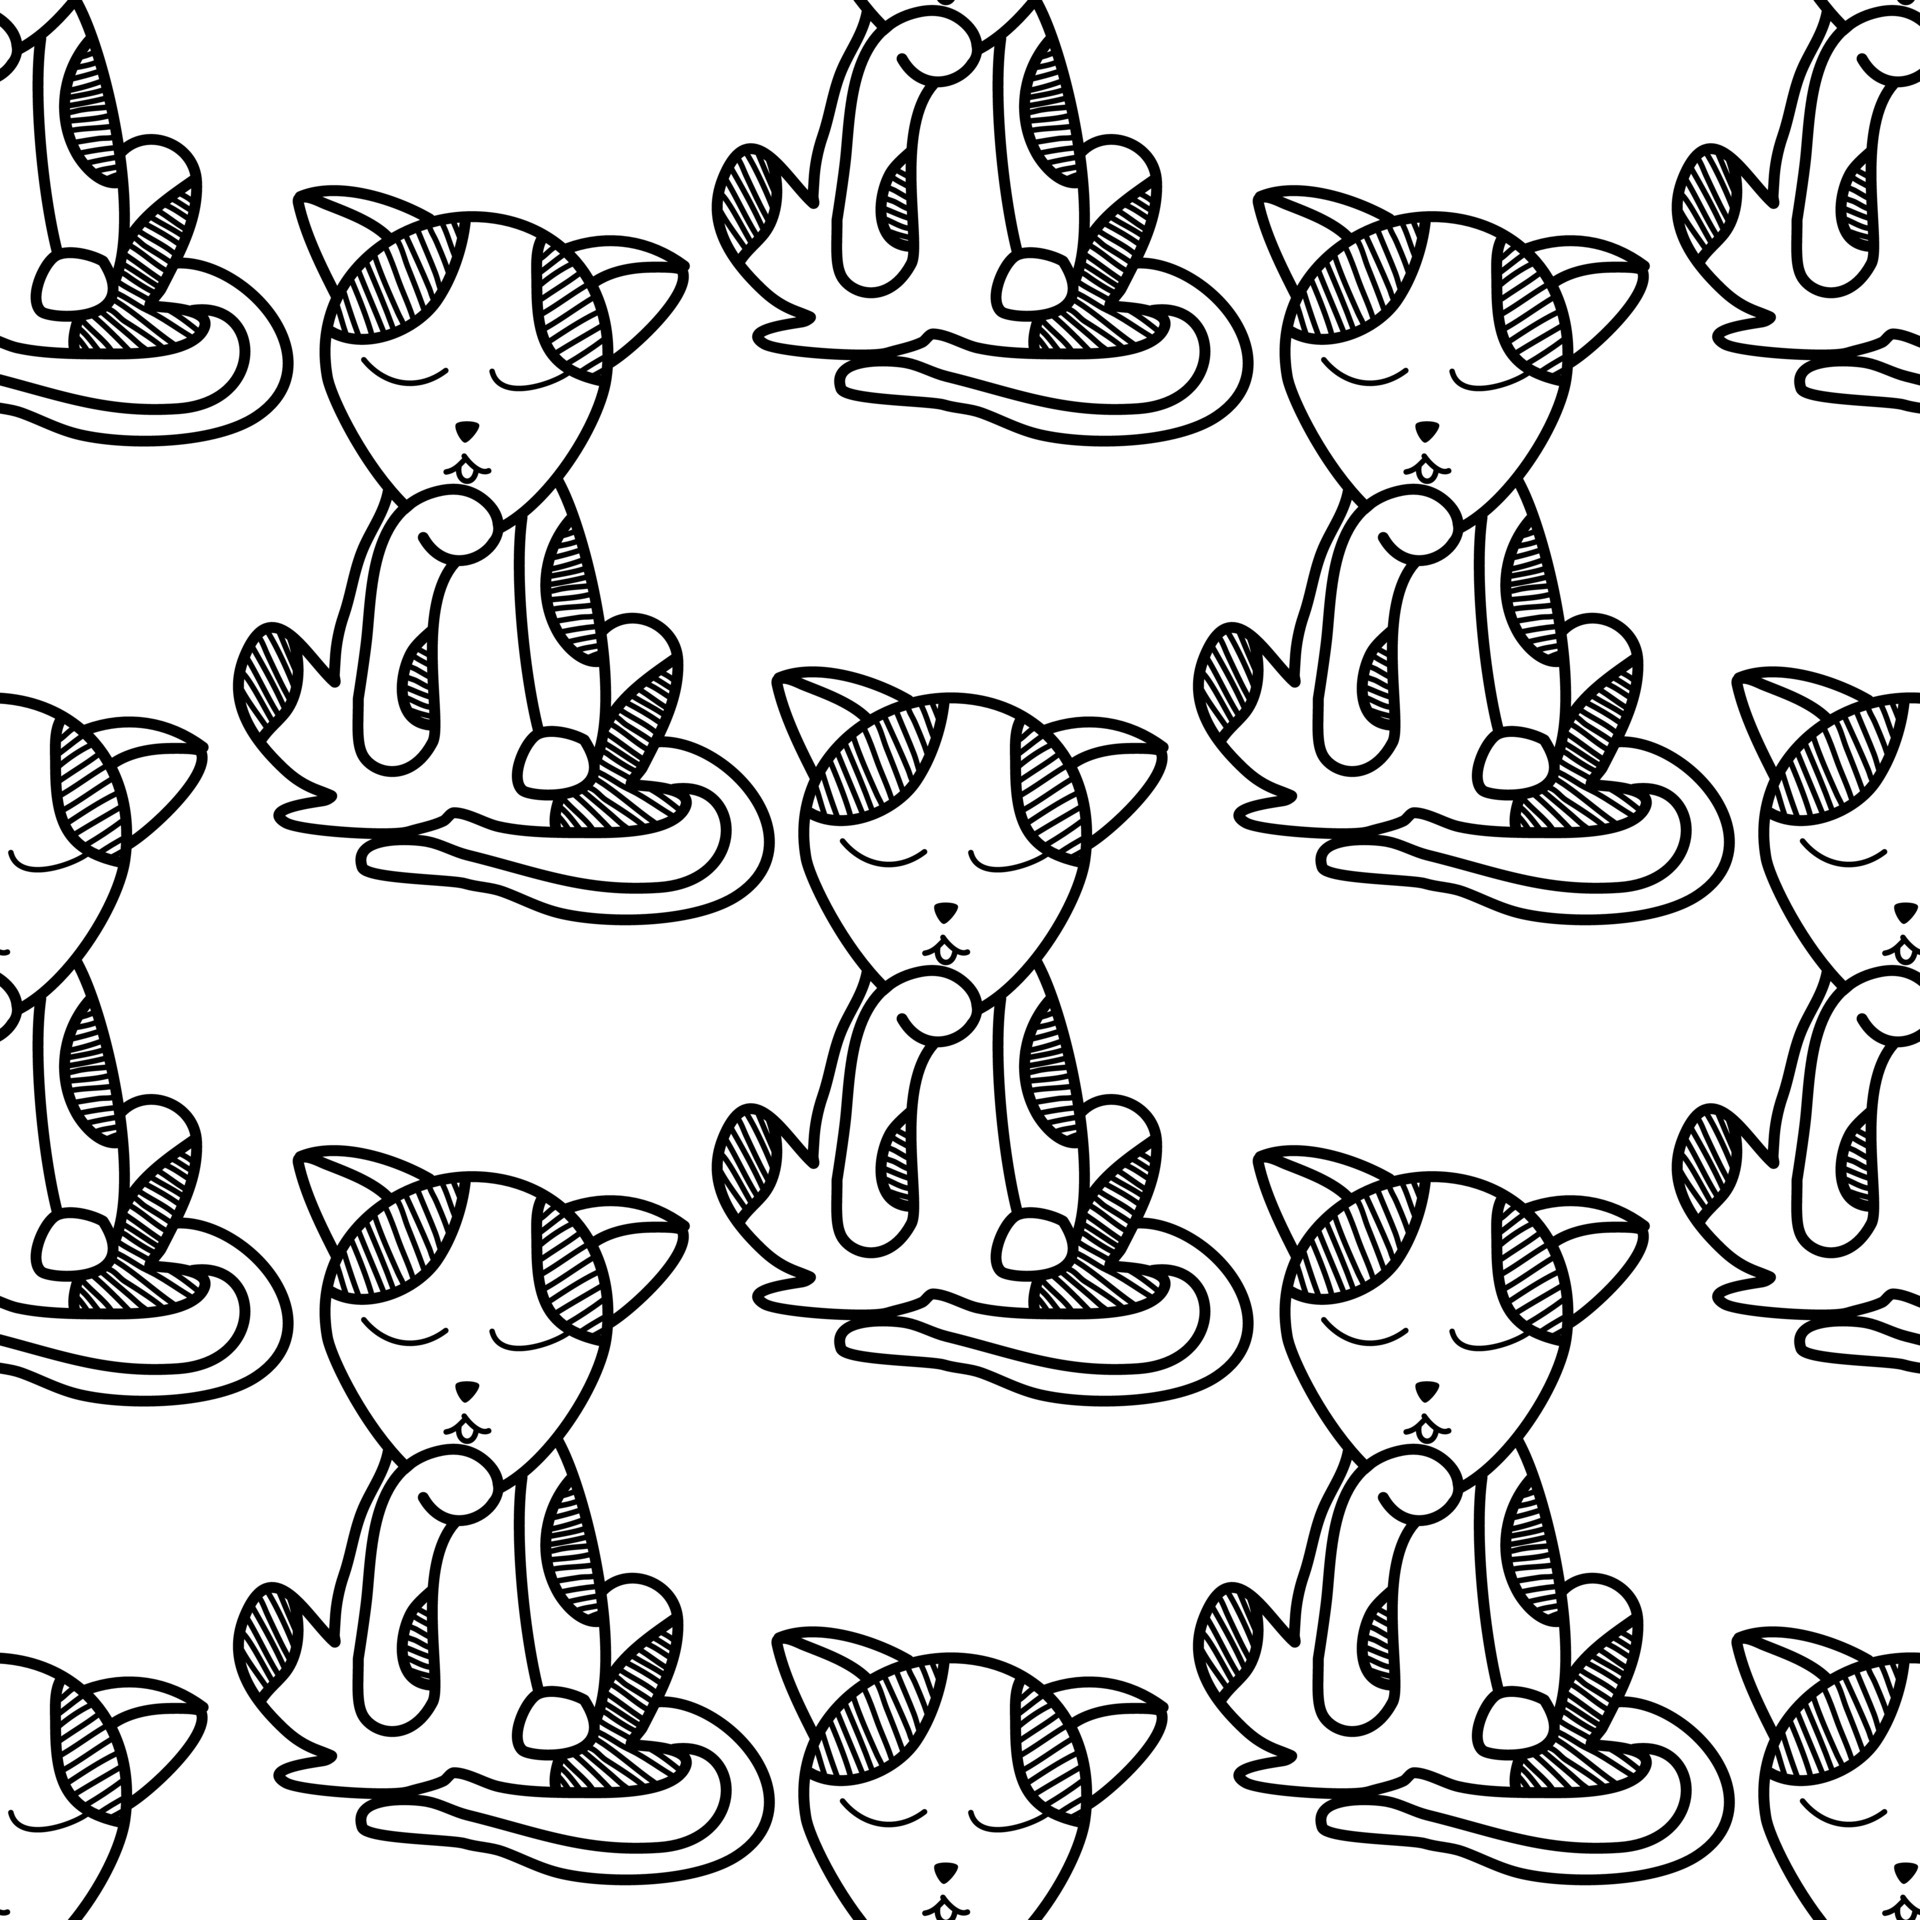 Baixar Vetor De Desenhos De Almofadas Para Gatos Fofos